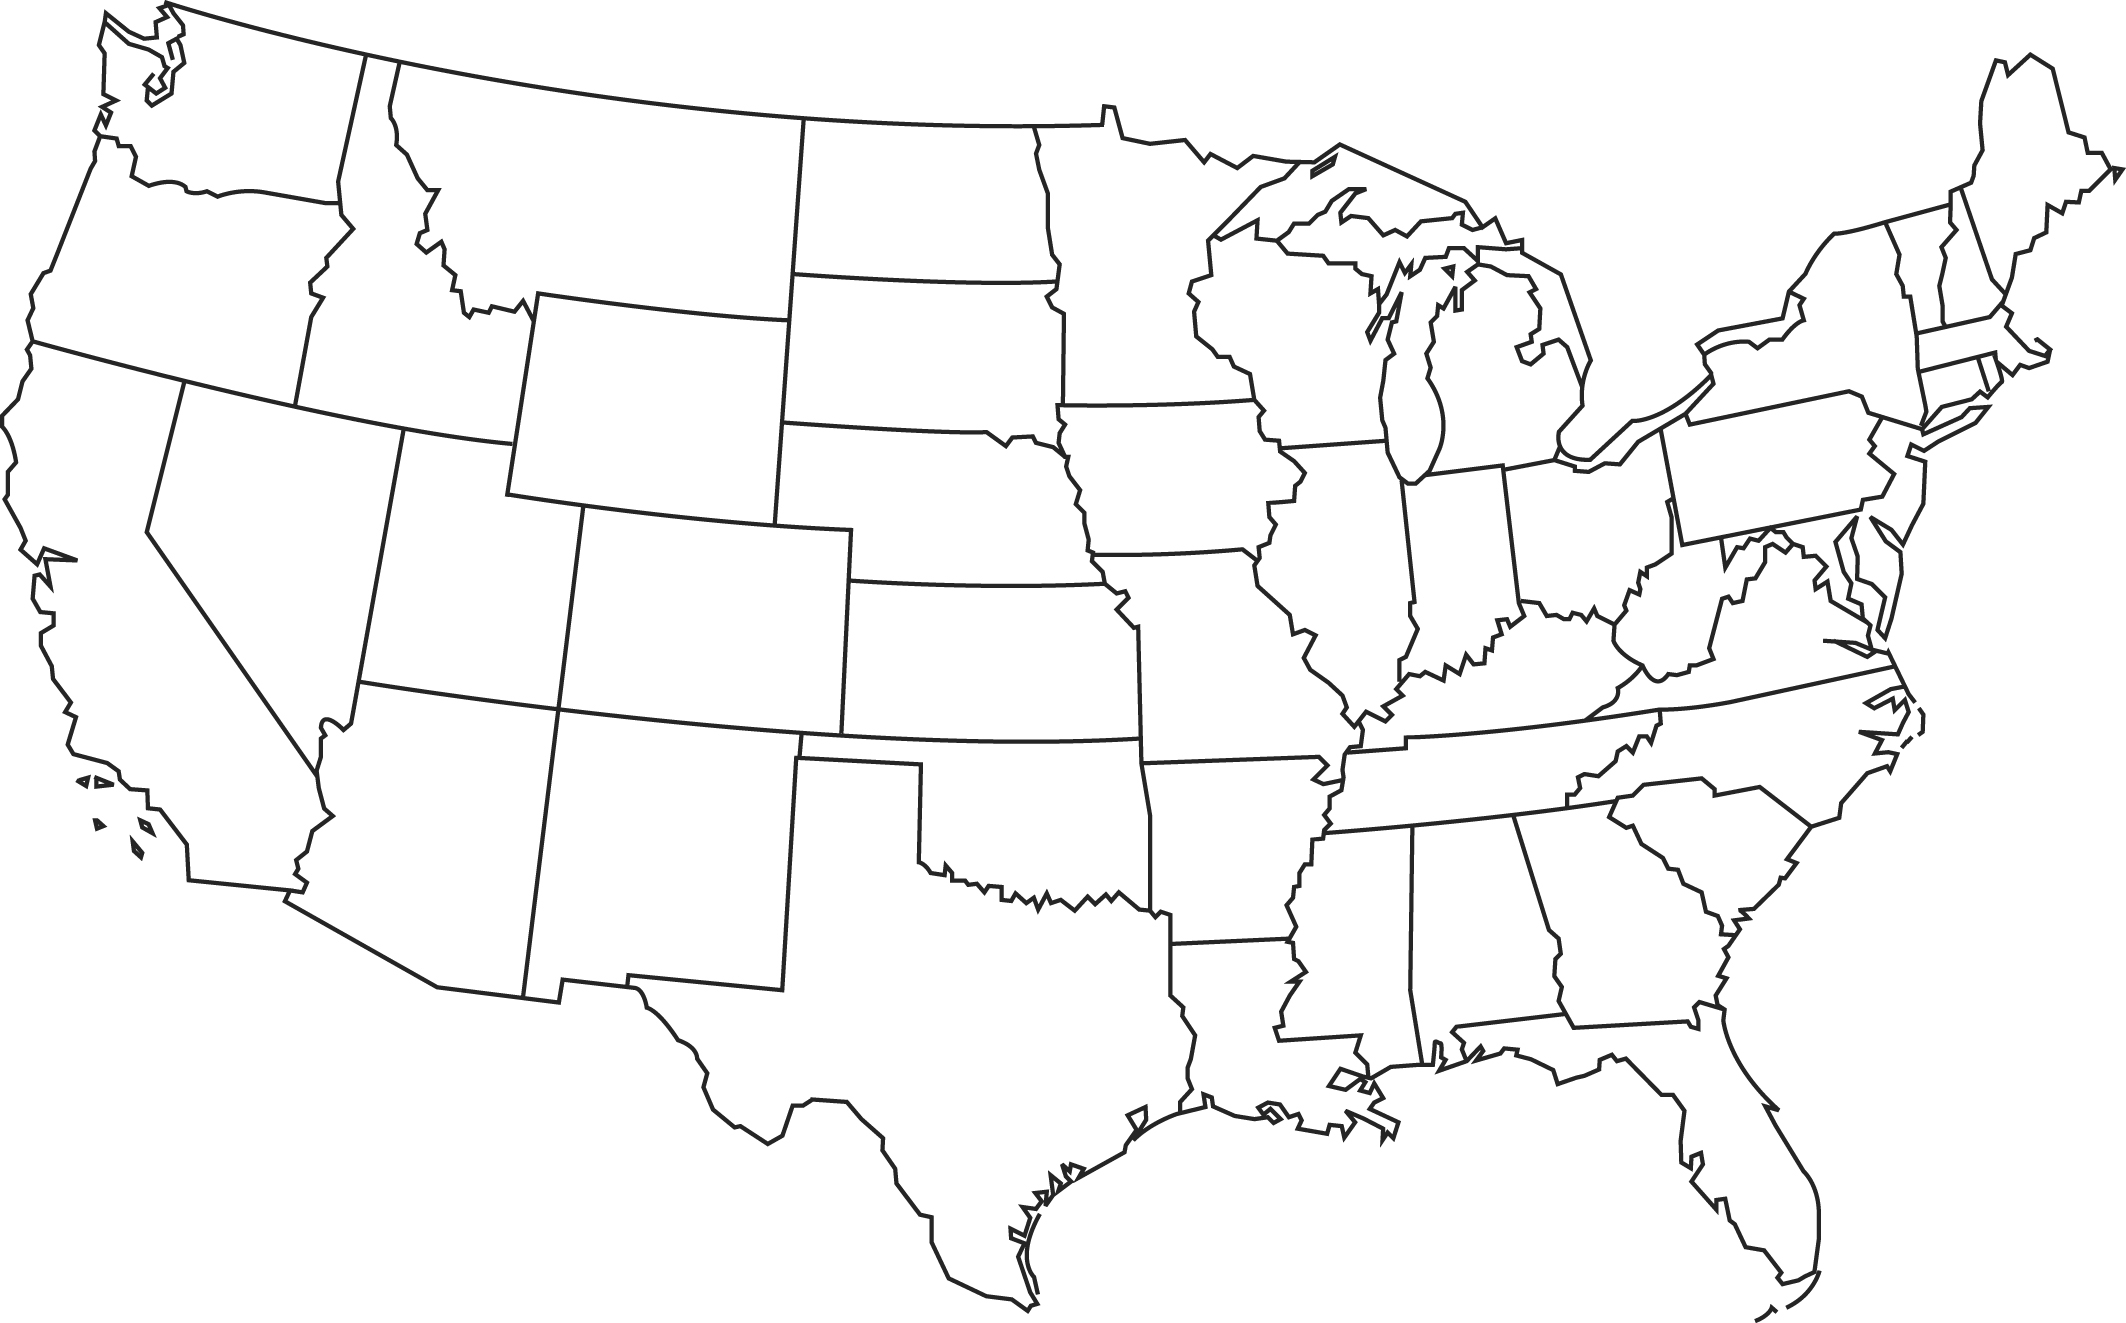  simsiz BLANK US MAP